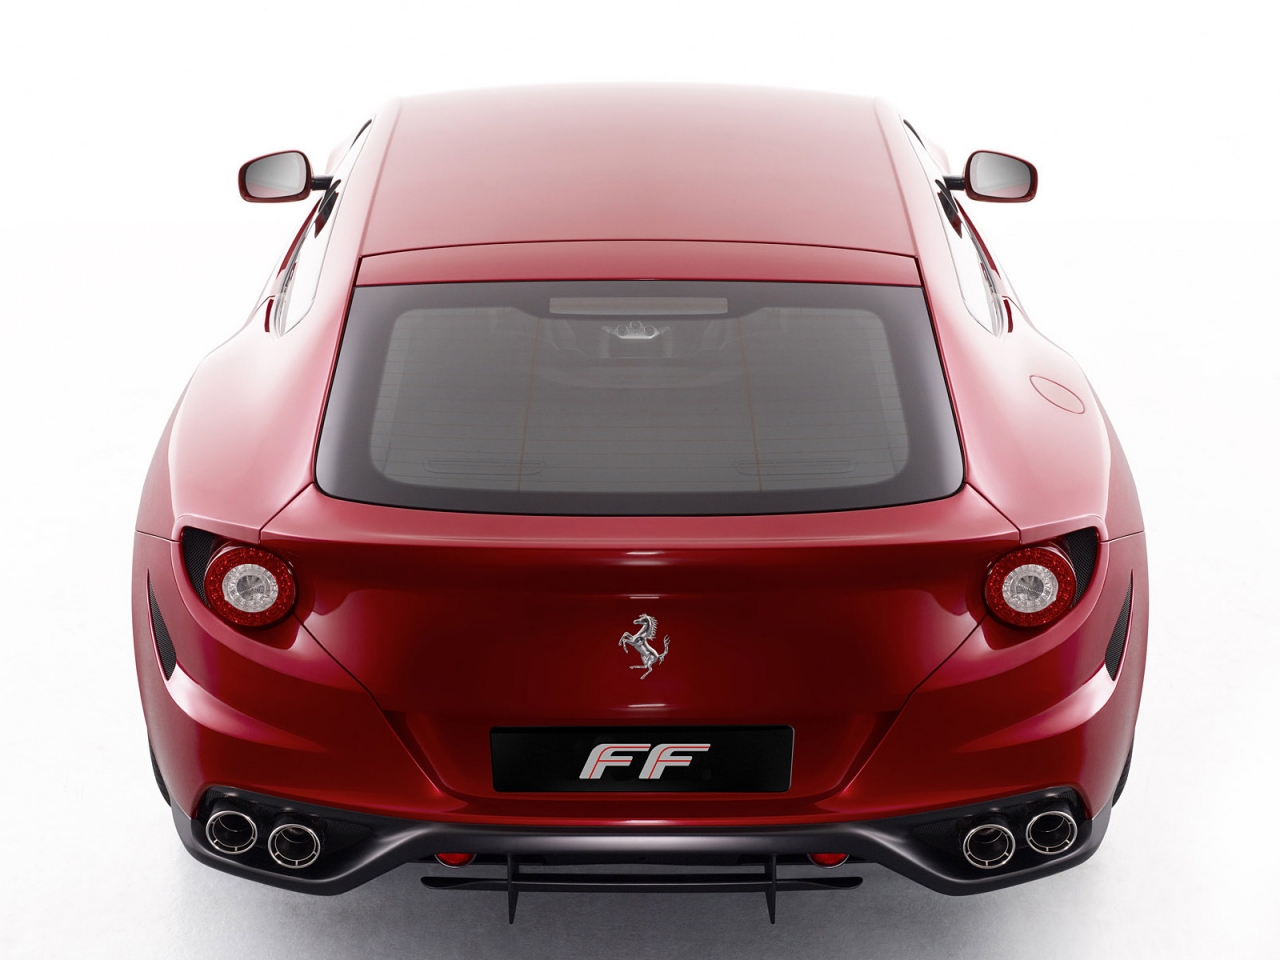 Ferrari FF Rear for 1280 x 960 resolution